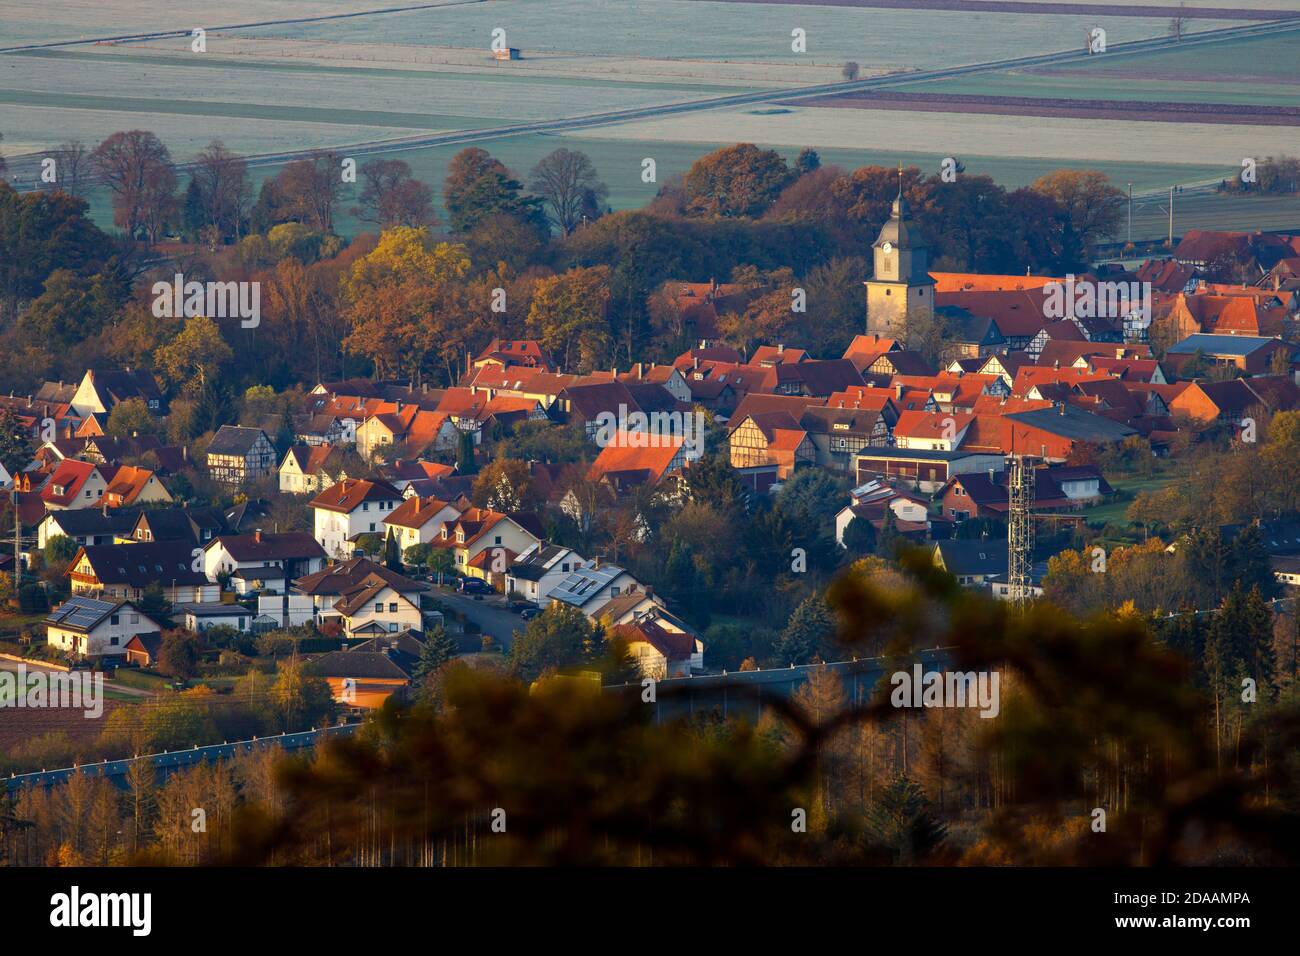 Le village de Herleshausen en Allemagne Banque D'Images